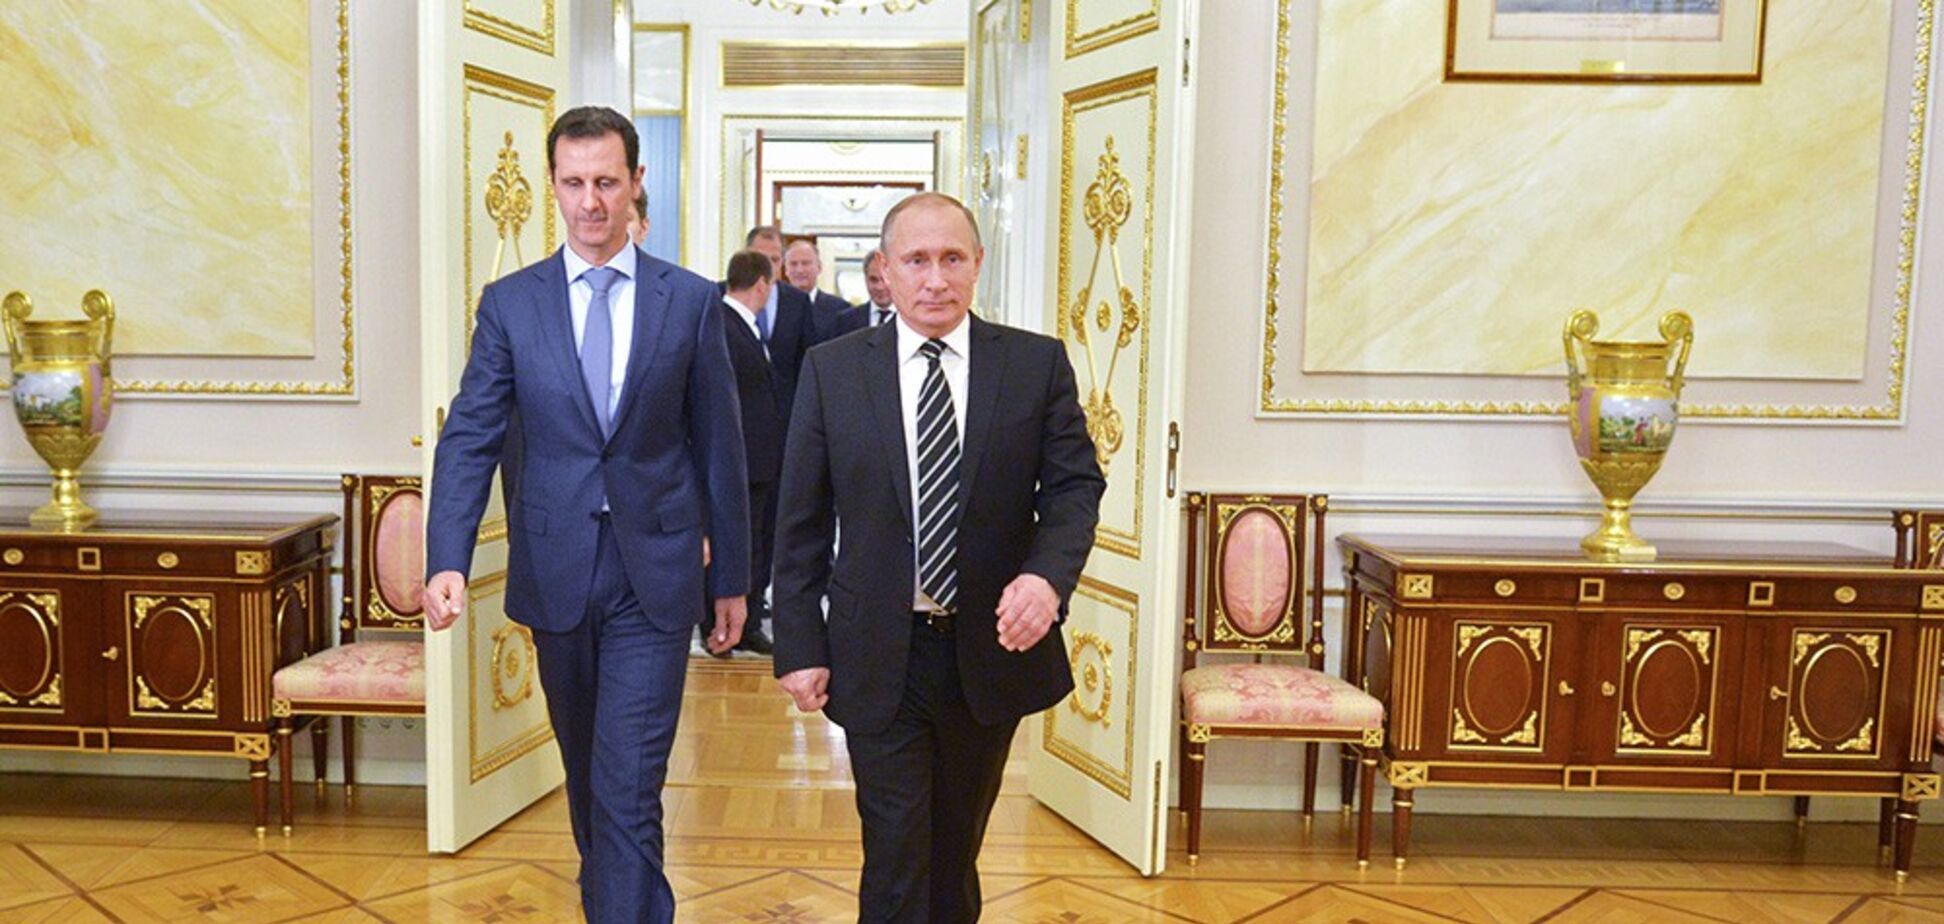 У Москвы большие проблемы в Сирии